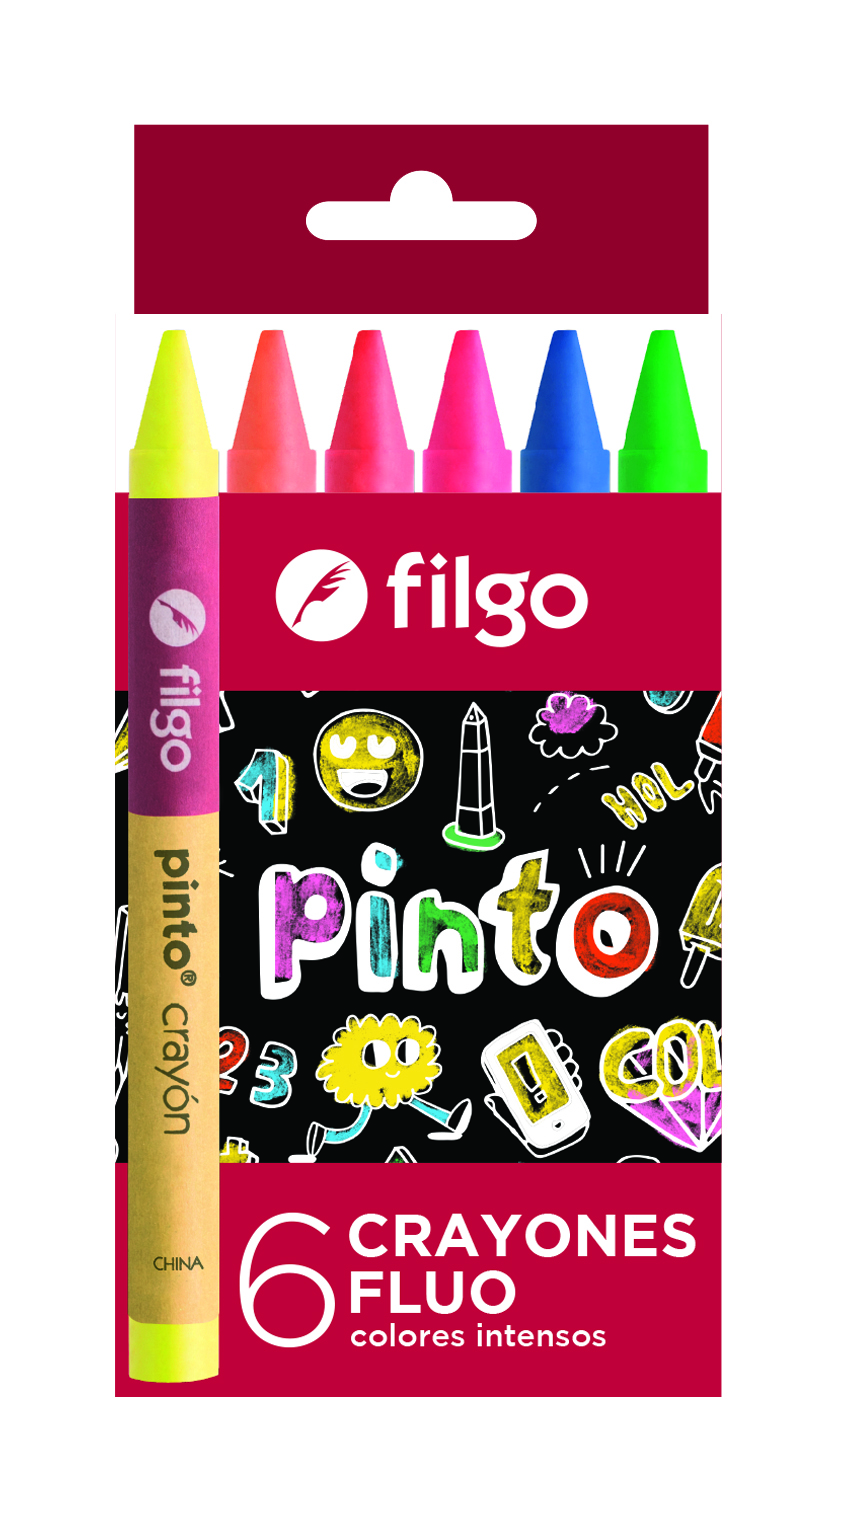 Crayones de cera PINTO / Estuche 6 flúo filgo